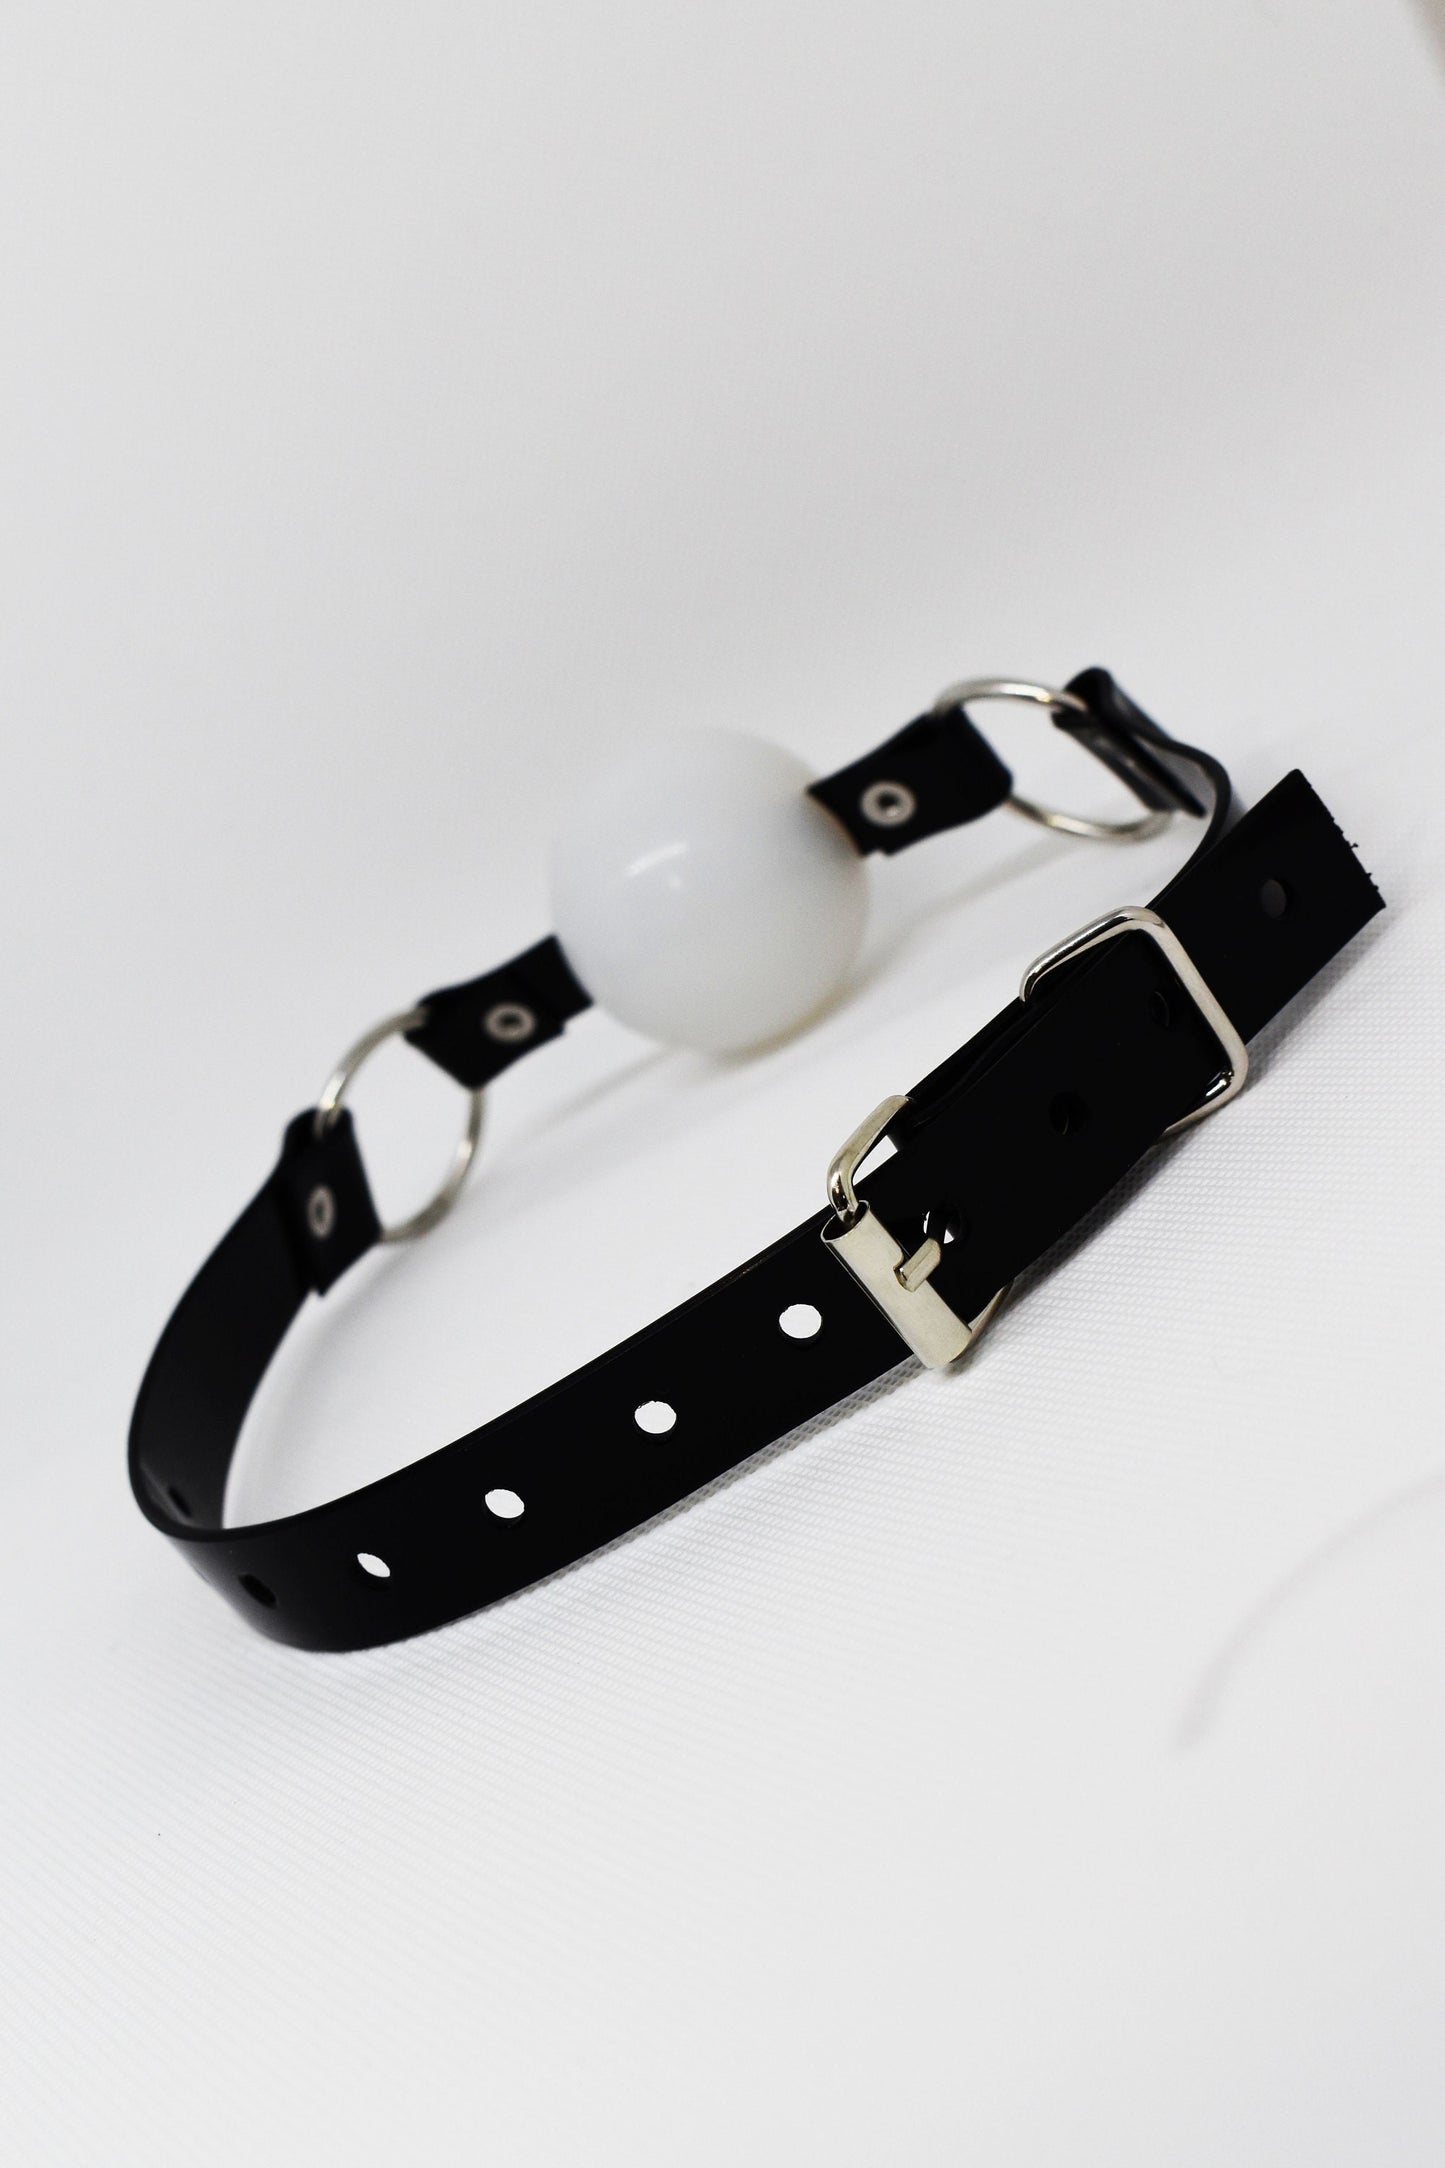 White Silicon Ball Gag with PVC black strap -Lockable -Vegan